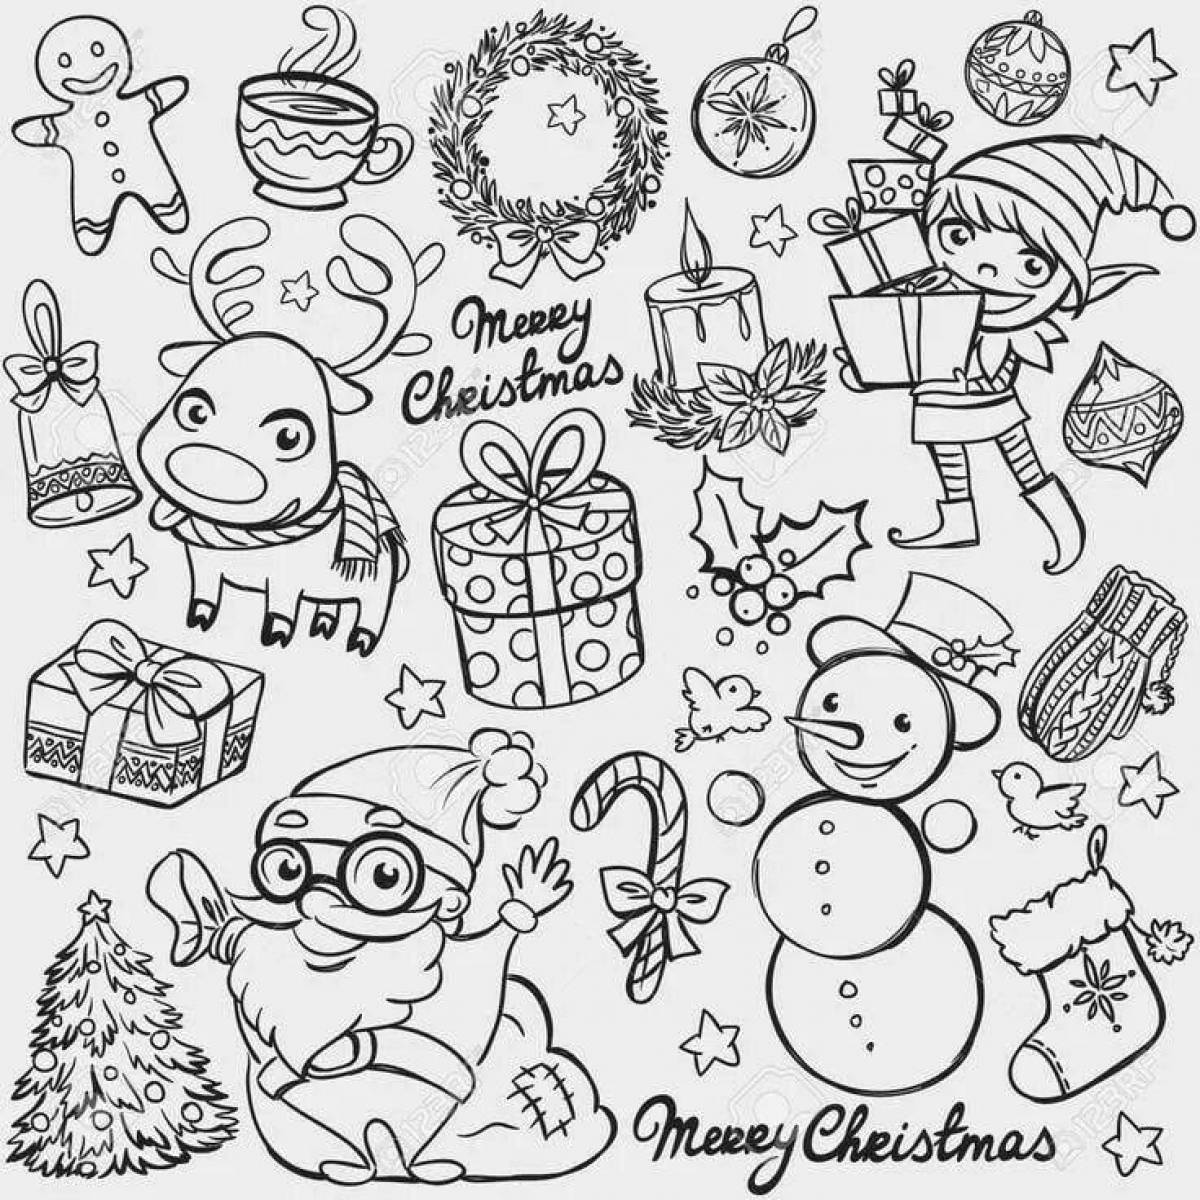 Stylish Christmas stickers